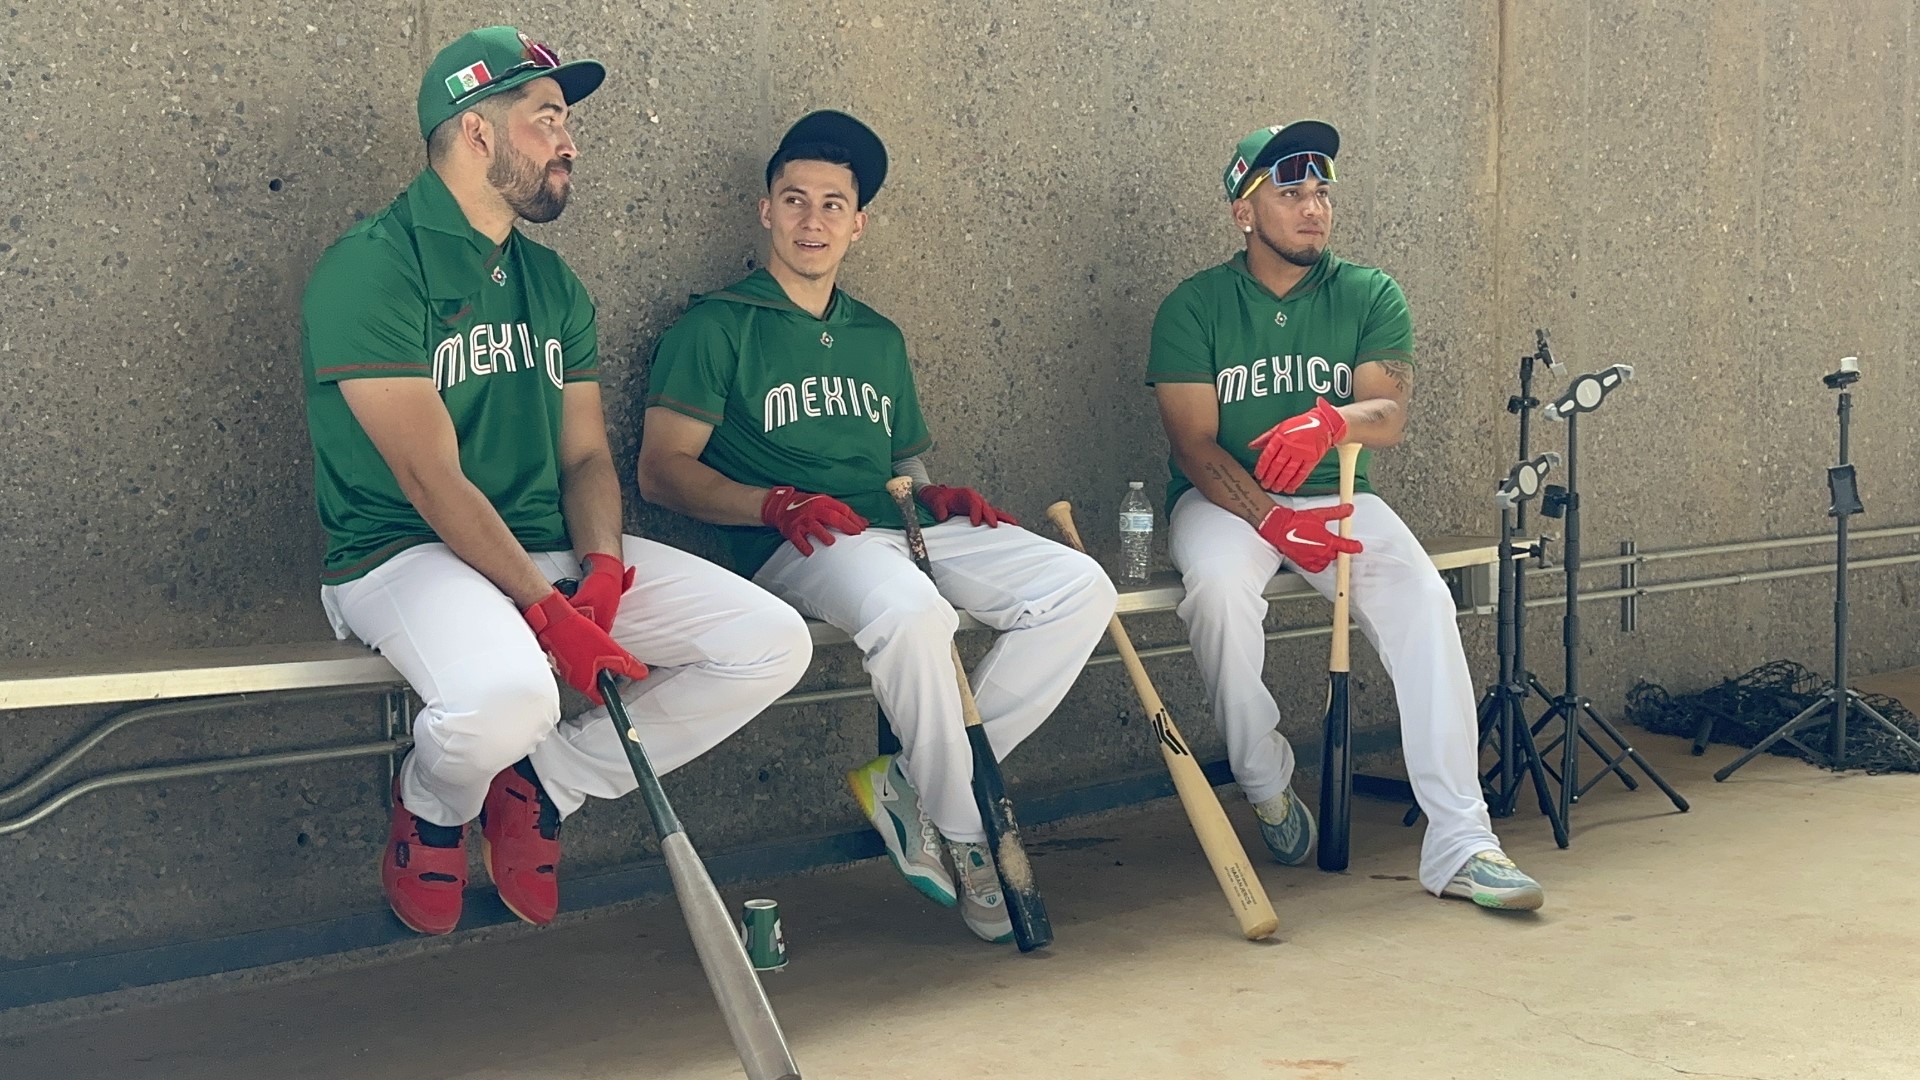 La novena mexicana tuvo su primera práctica con el equipo completo en los campos de Salt River Fields de cara al Clásico Mundial de Béisbol 2023.